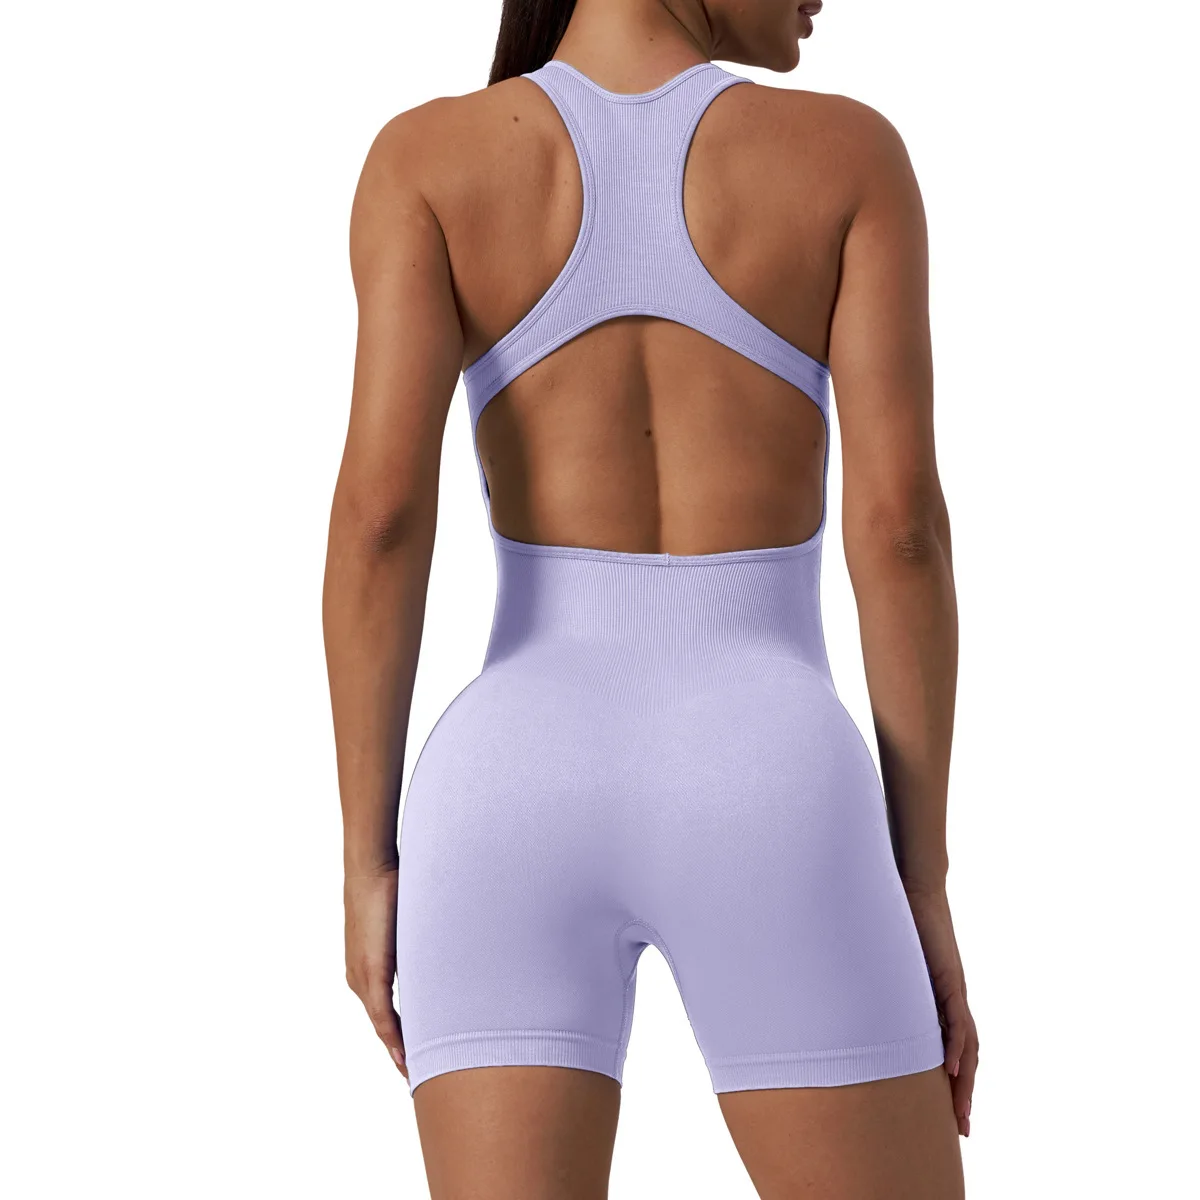 INS Новый стиль, сексуальный комбинезон для ягодиц персикового цвета, Быстросохнущая спортивная одежда для фитнеса, Красивая воздушная одежда для йоги на спине Изображение 1